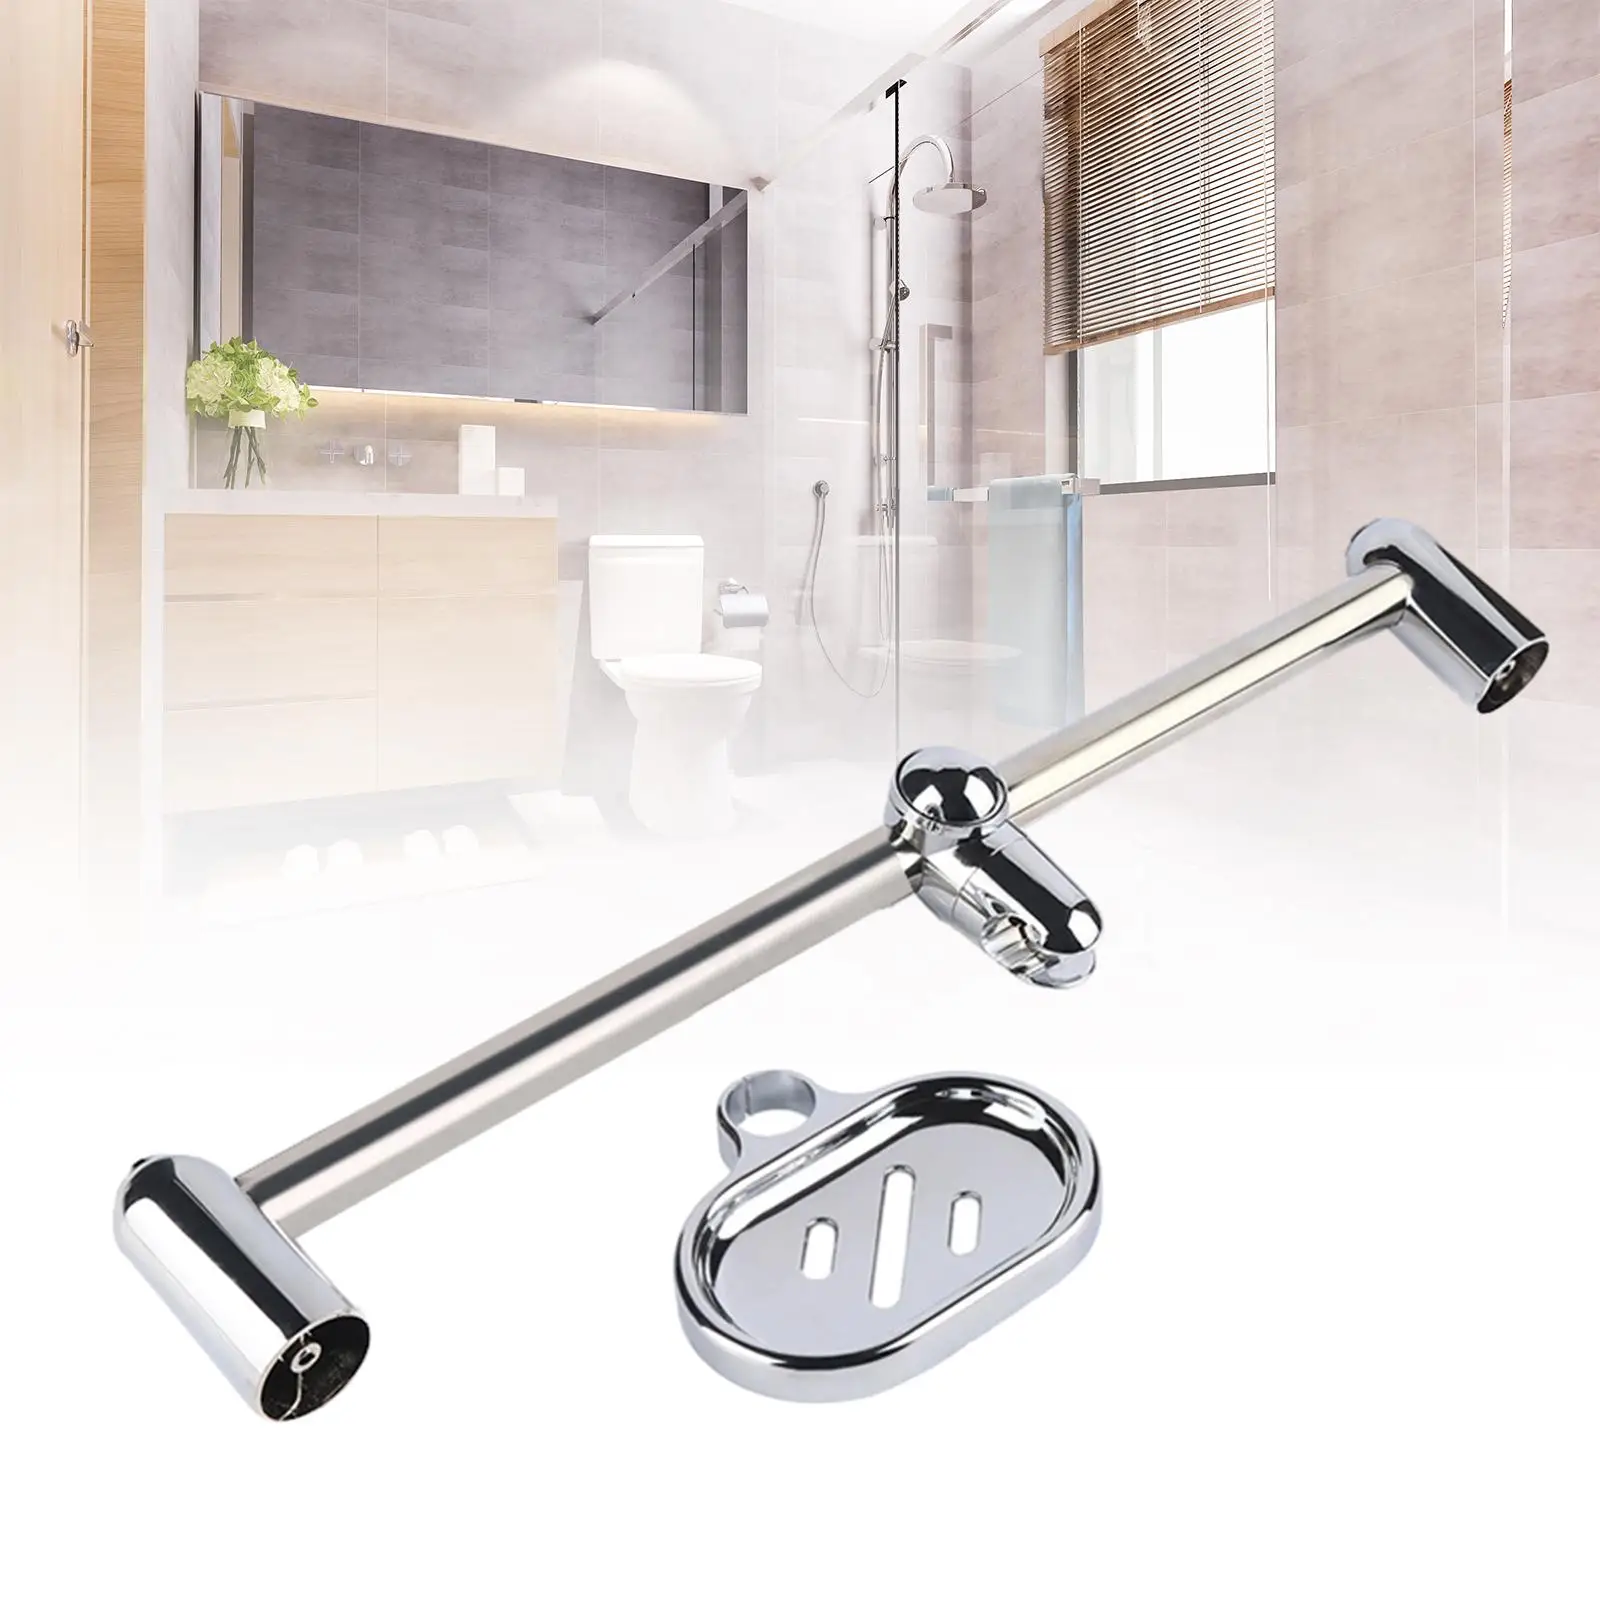 Bathroom Wall Mount Shower Head Slide Bars 360° Rotation Polished Surface with Adjustable Handheld Shower Head Holder 60cm